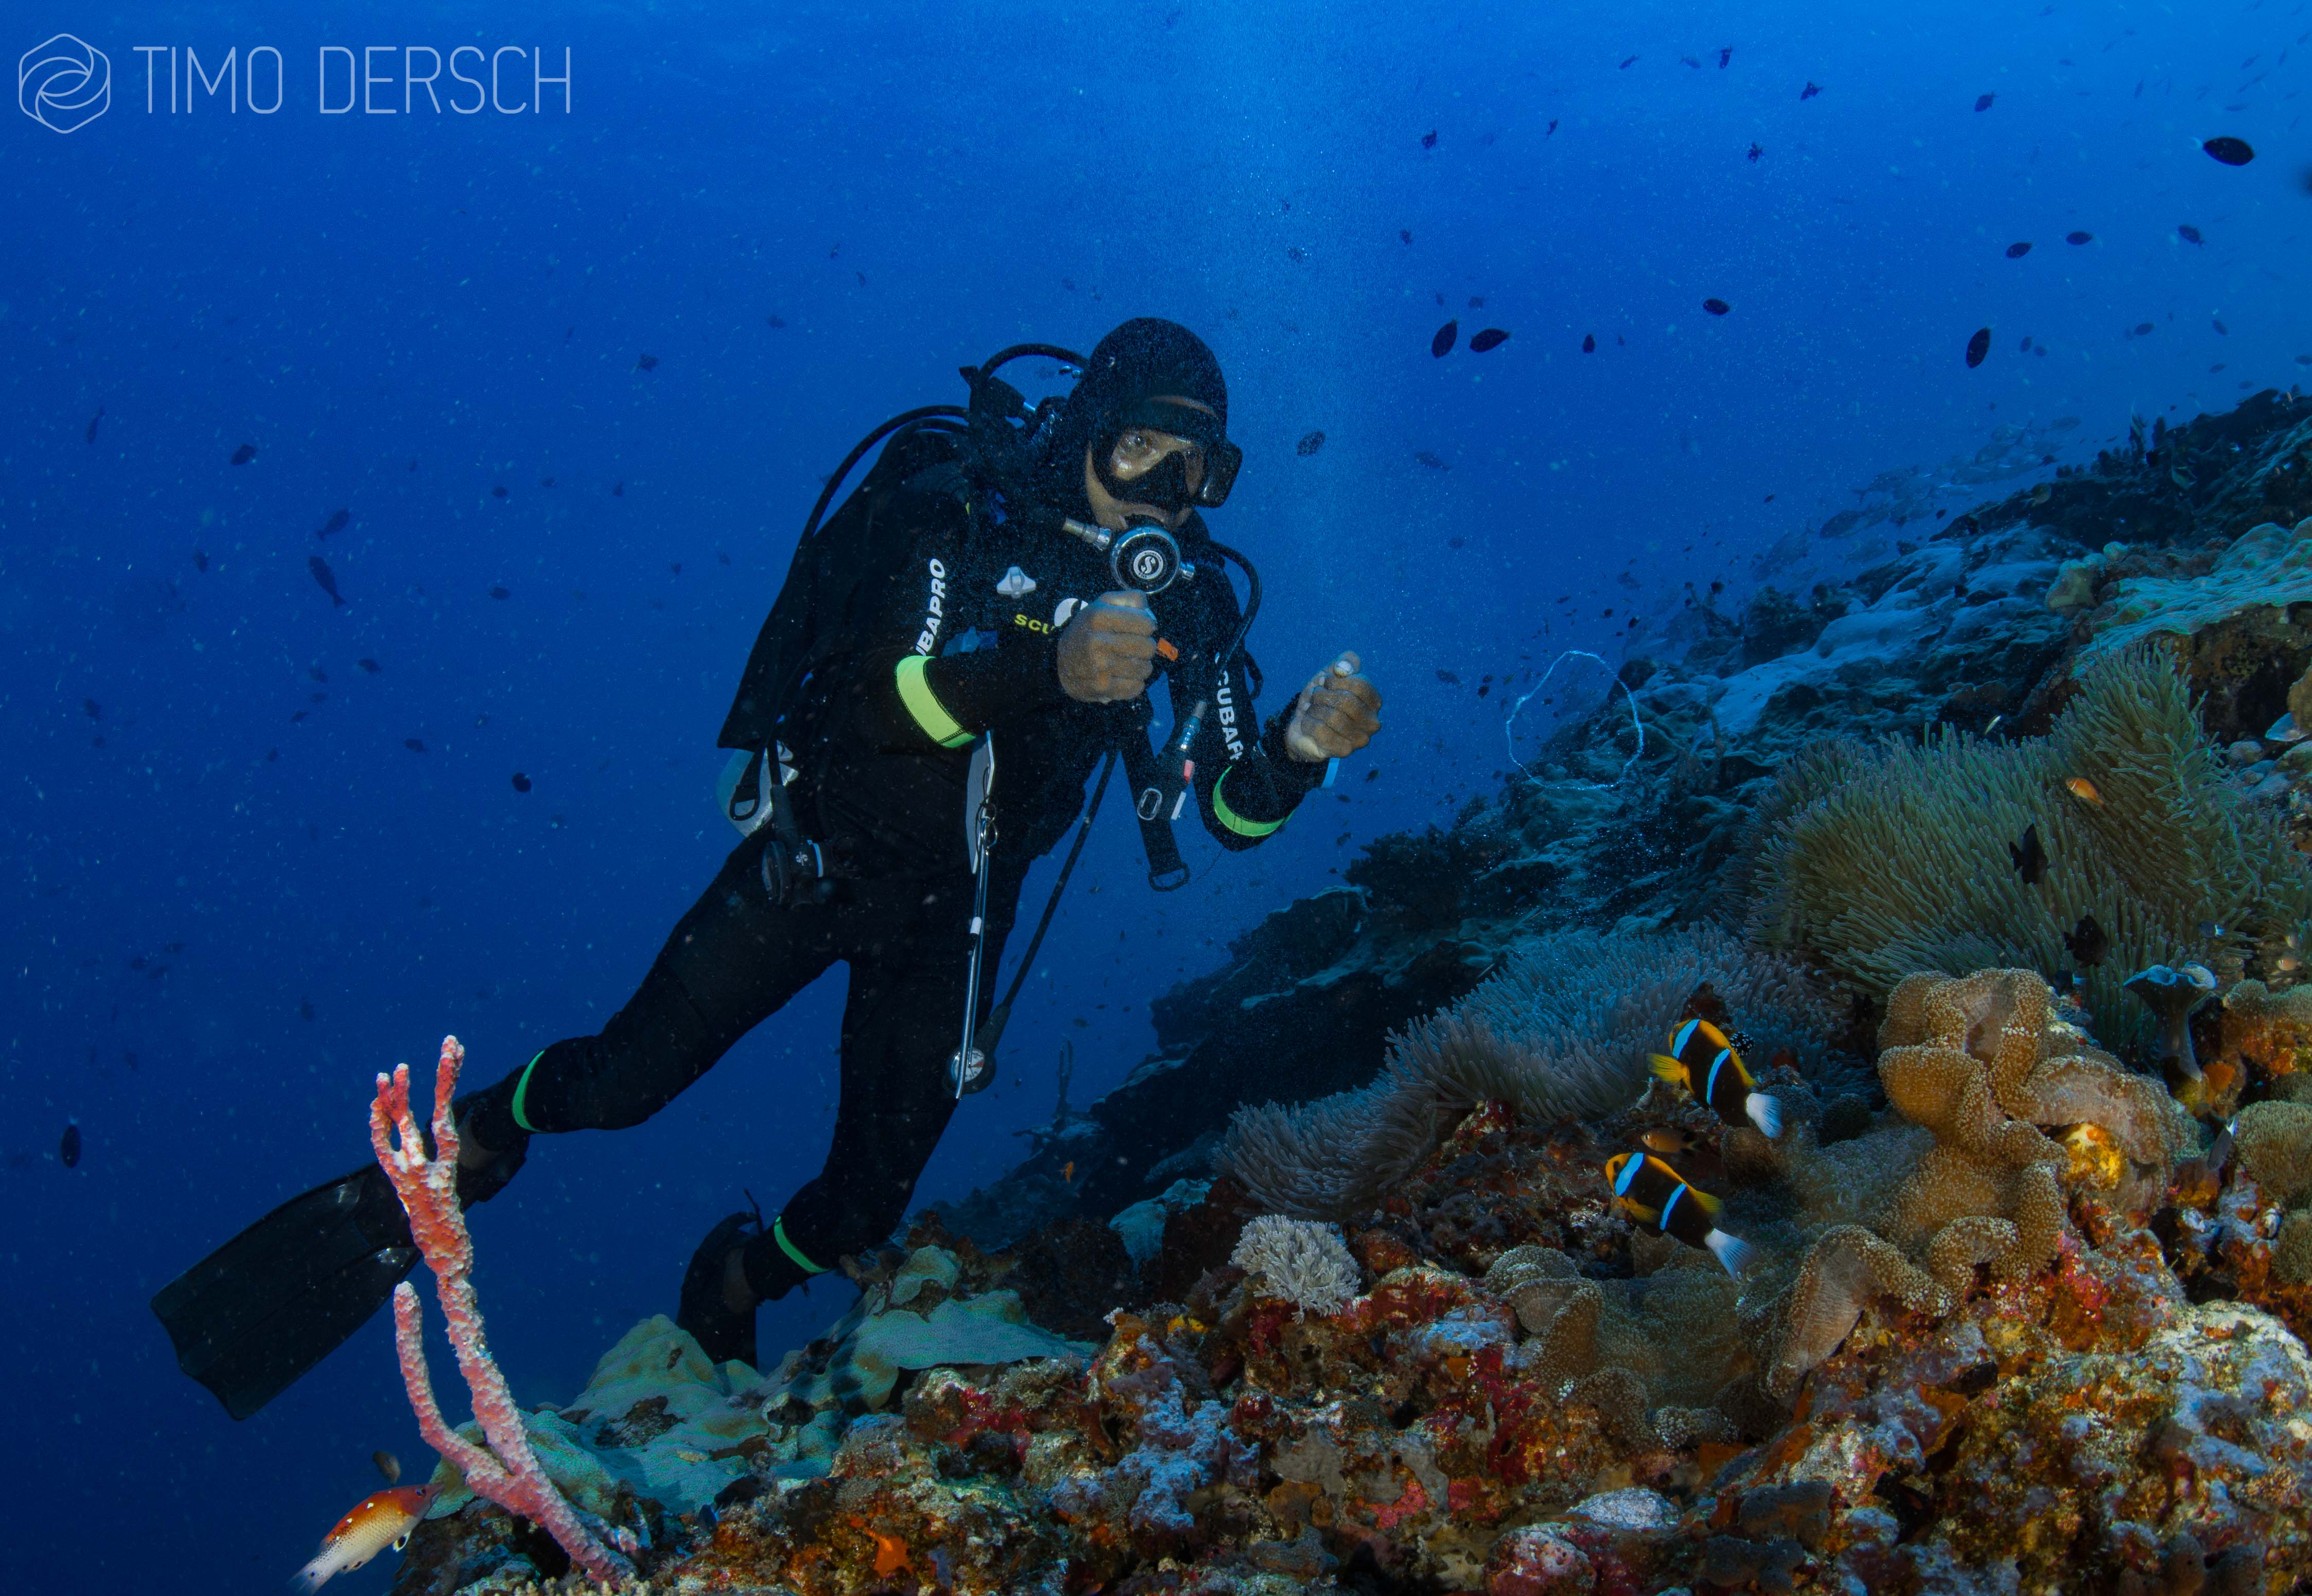 Timo dersch journalist diver writer underwater photgrapher